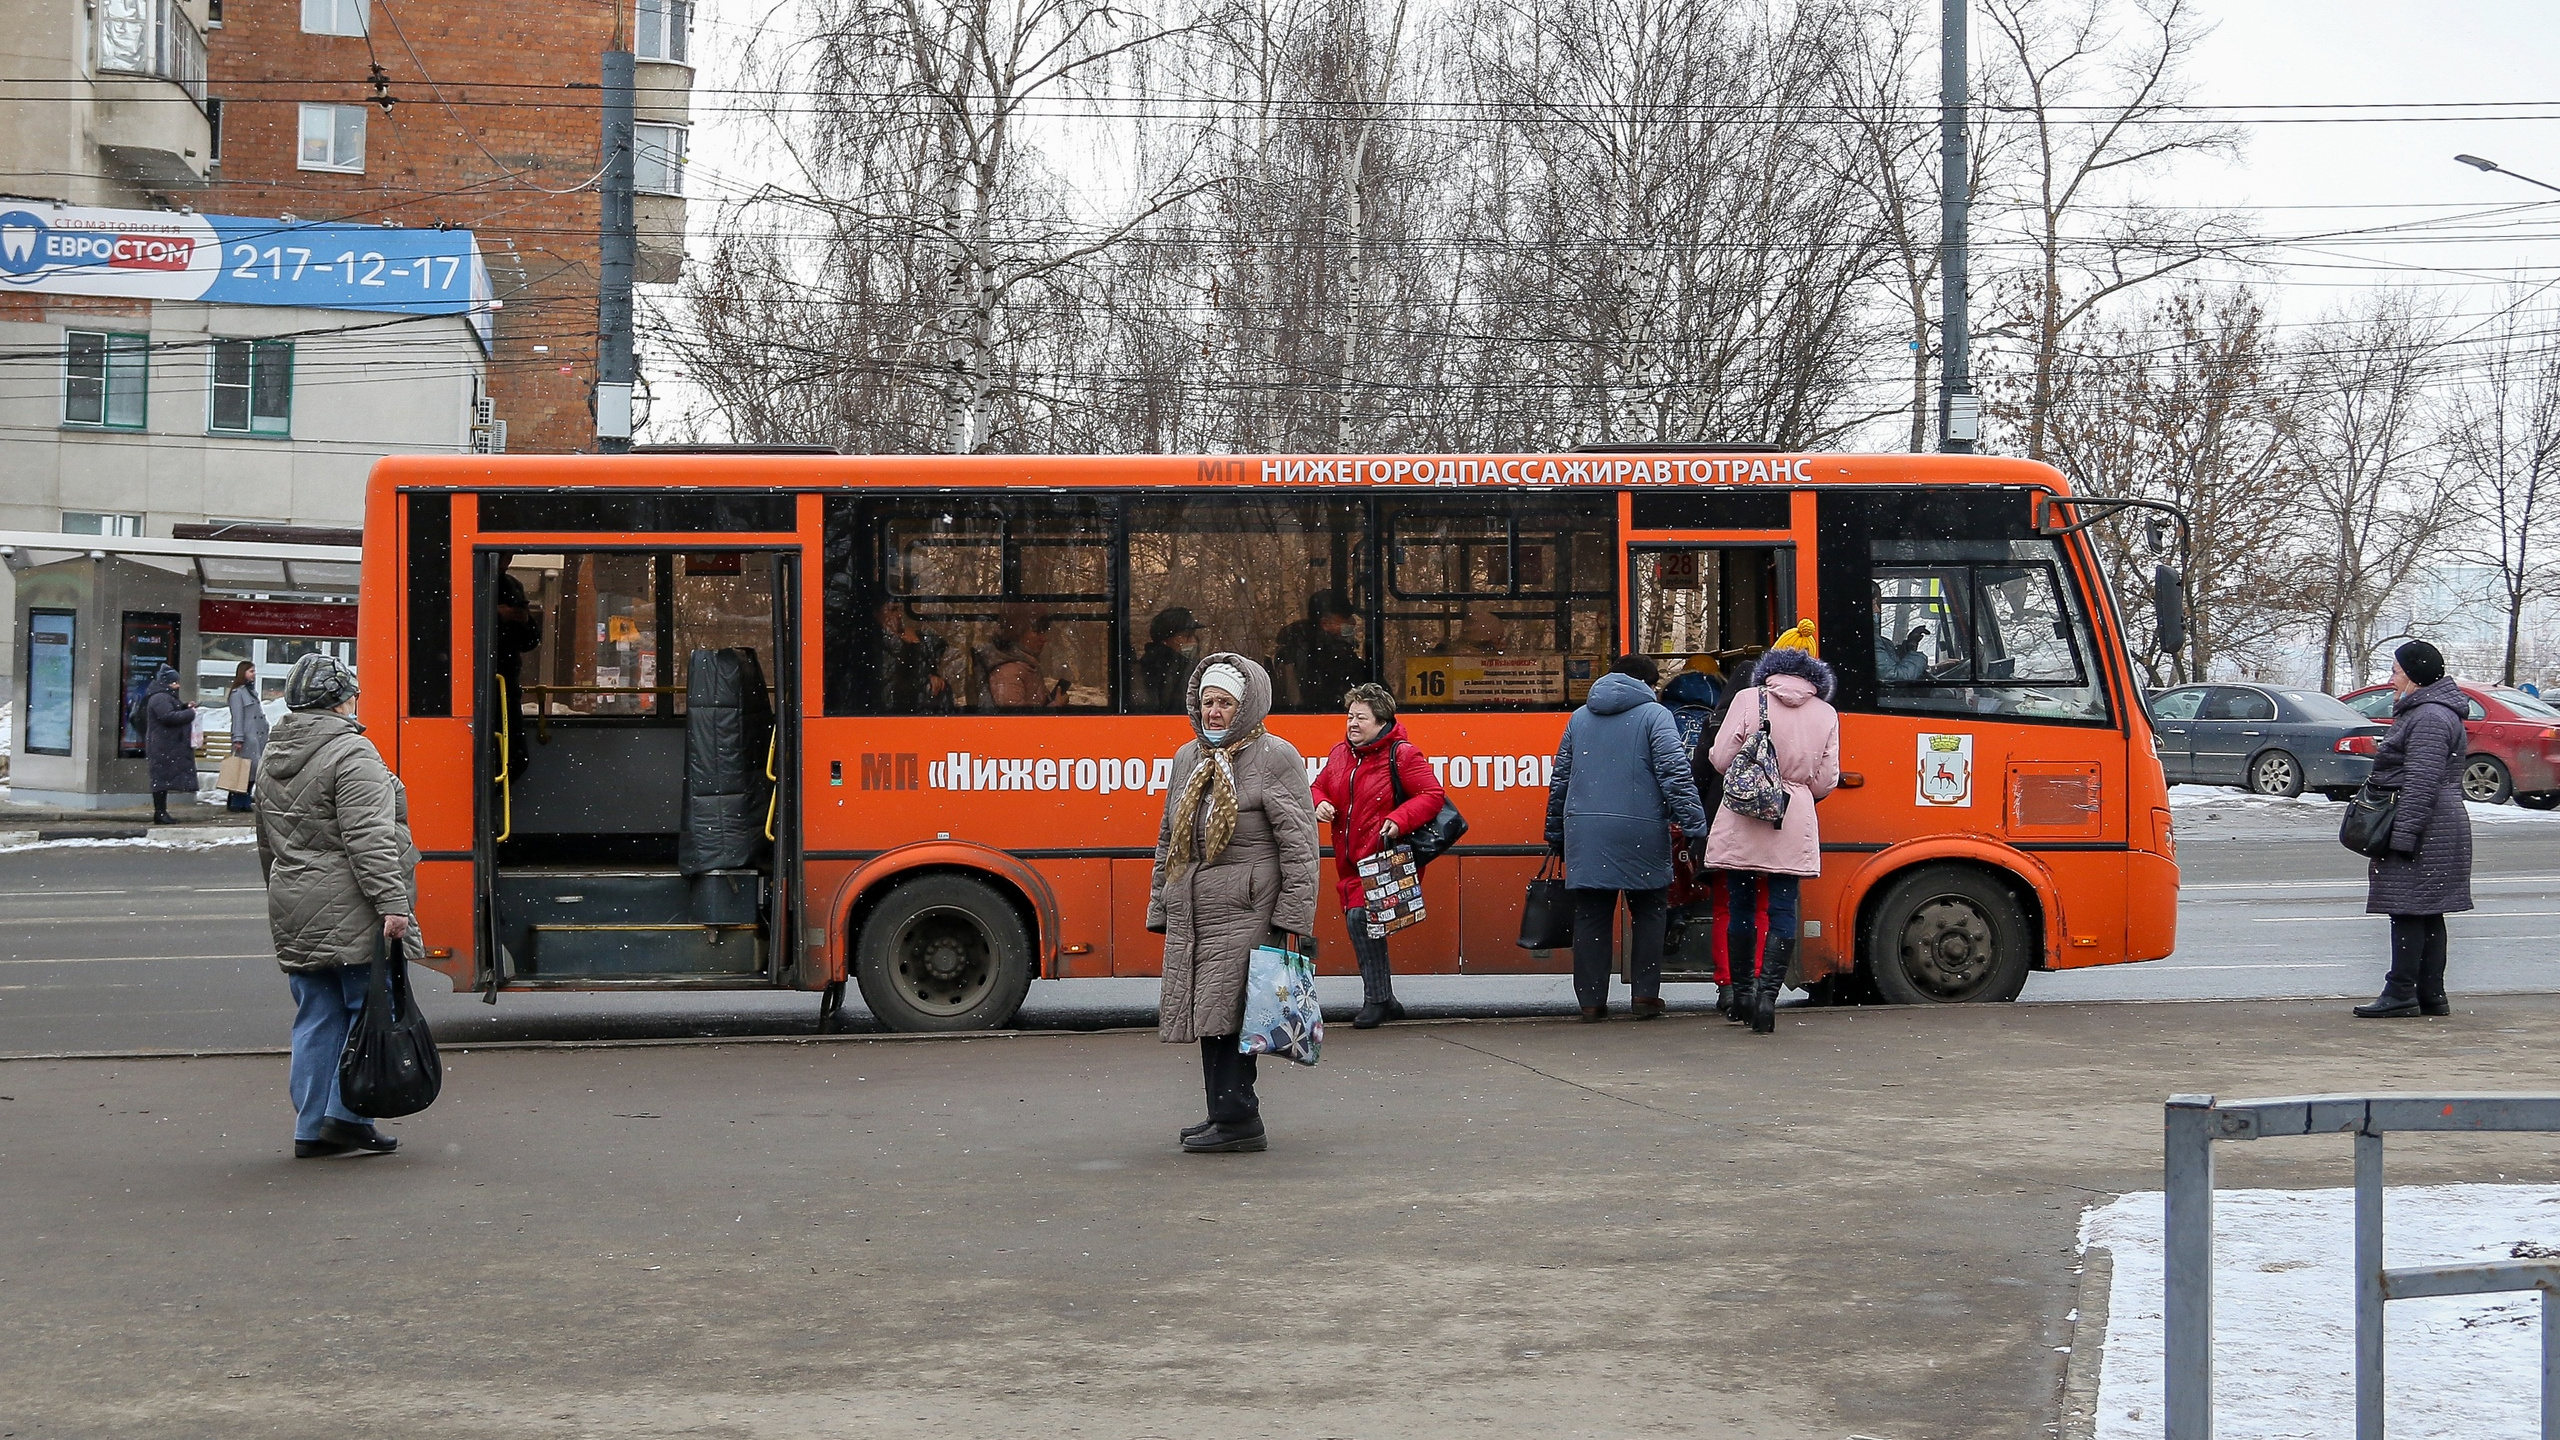 Красный автобус нижний новгород. Автобус Нижний Новгород. Маршрутный автобус. Люди в автобусе. Бесплатный общественный транспорт.